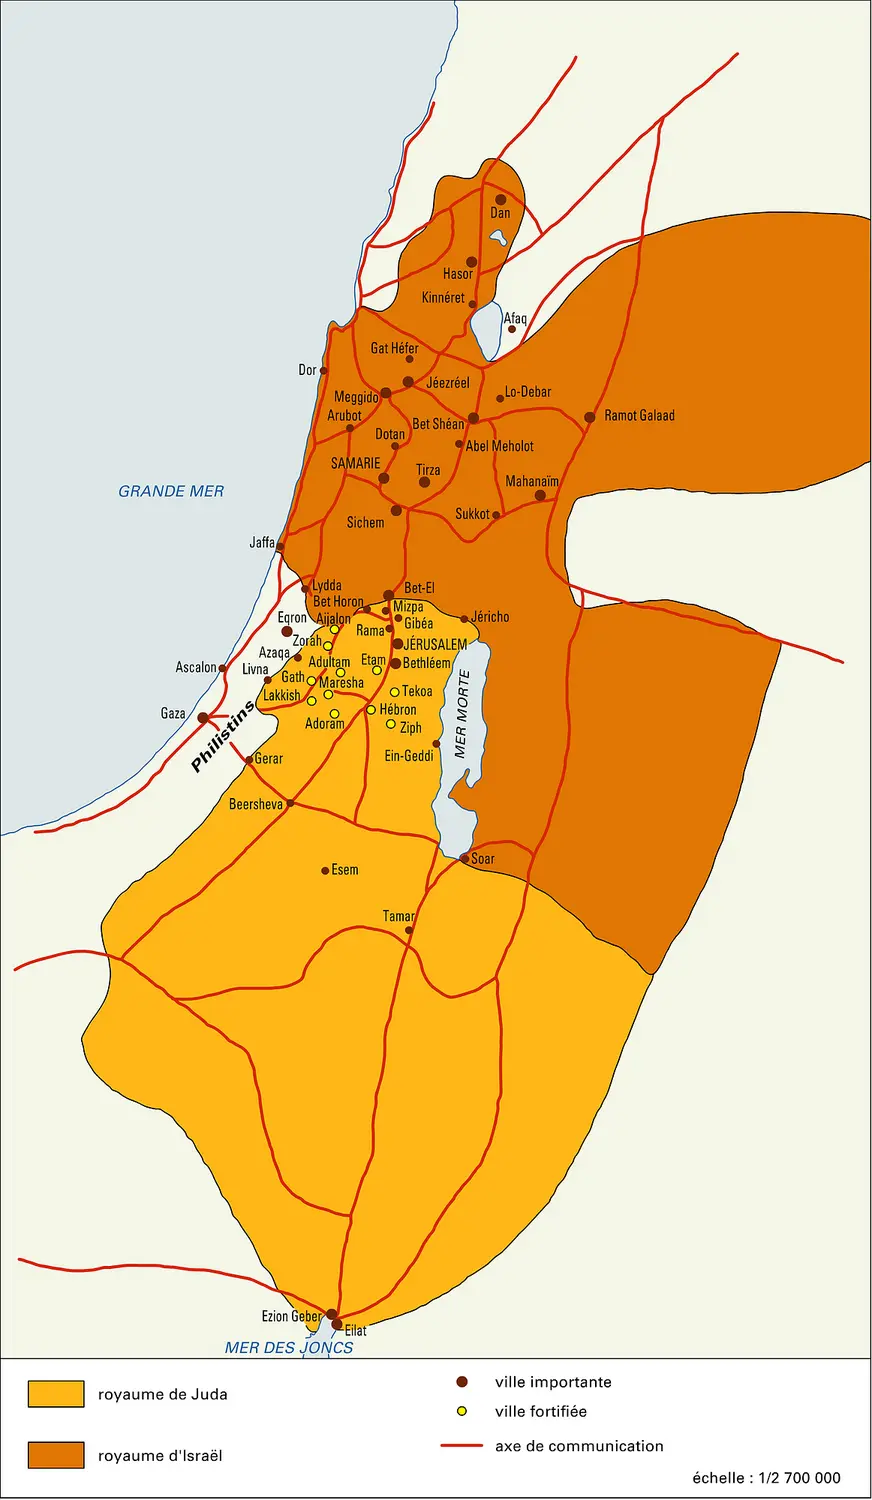 Royaumes de Juda et d'Israël au VIII<sup>e</sup> siècle avant J.-C.